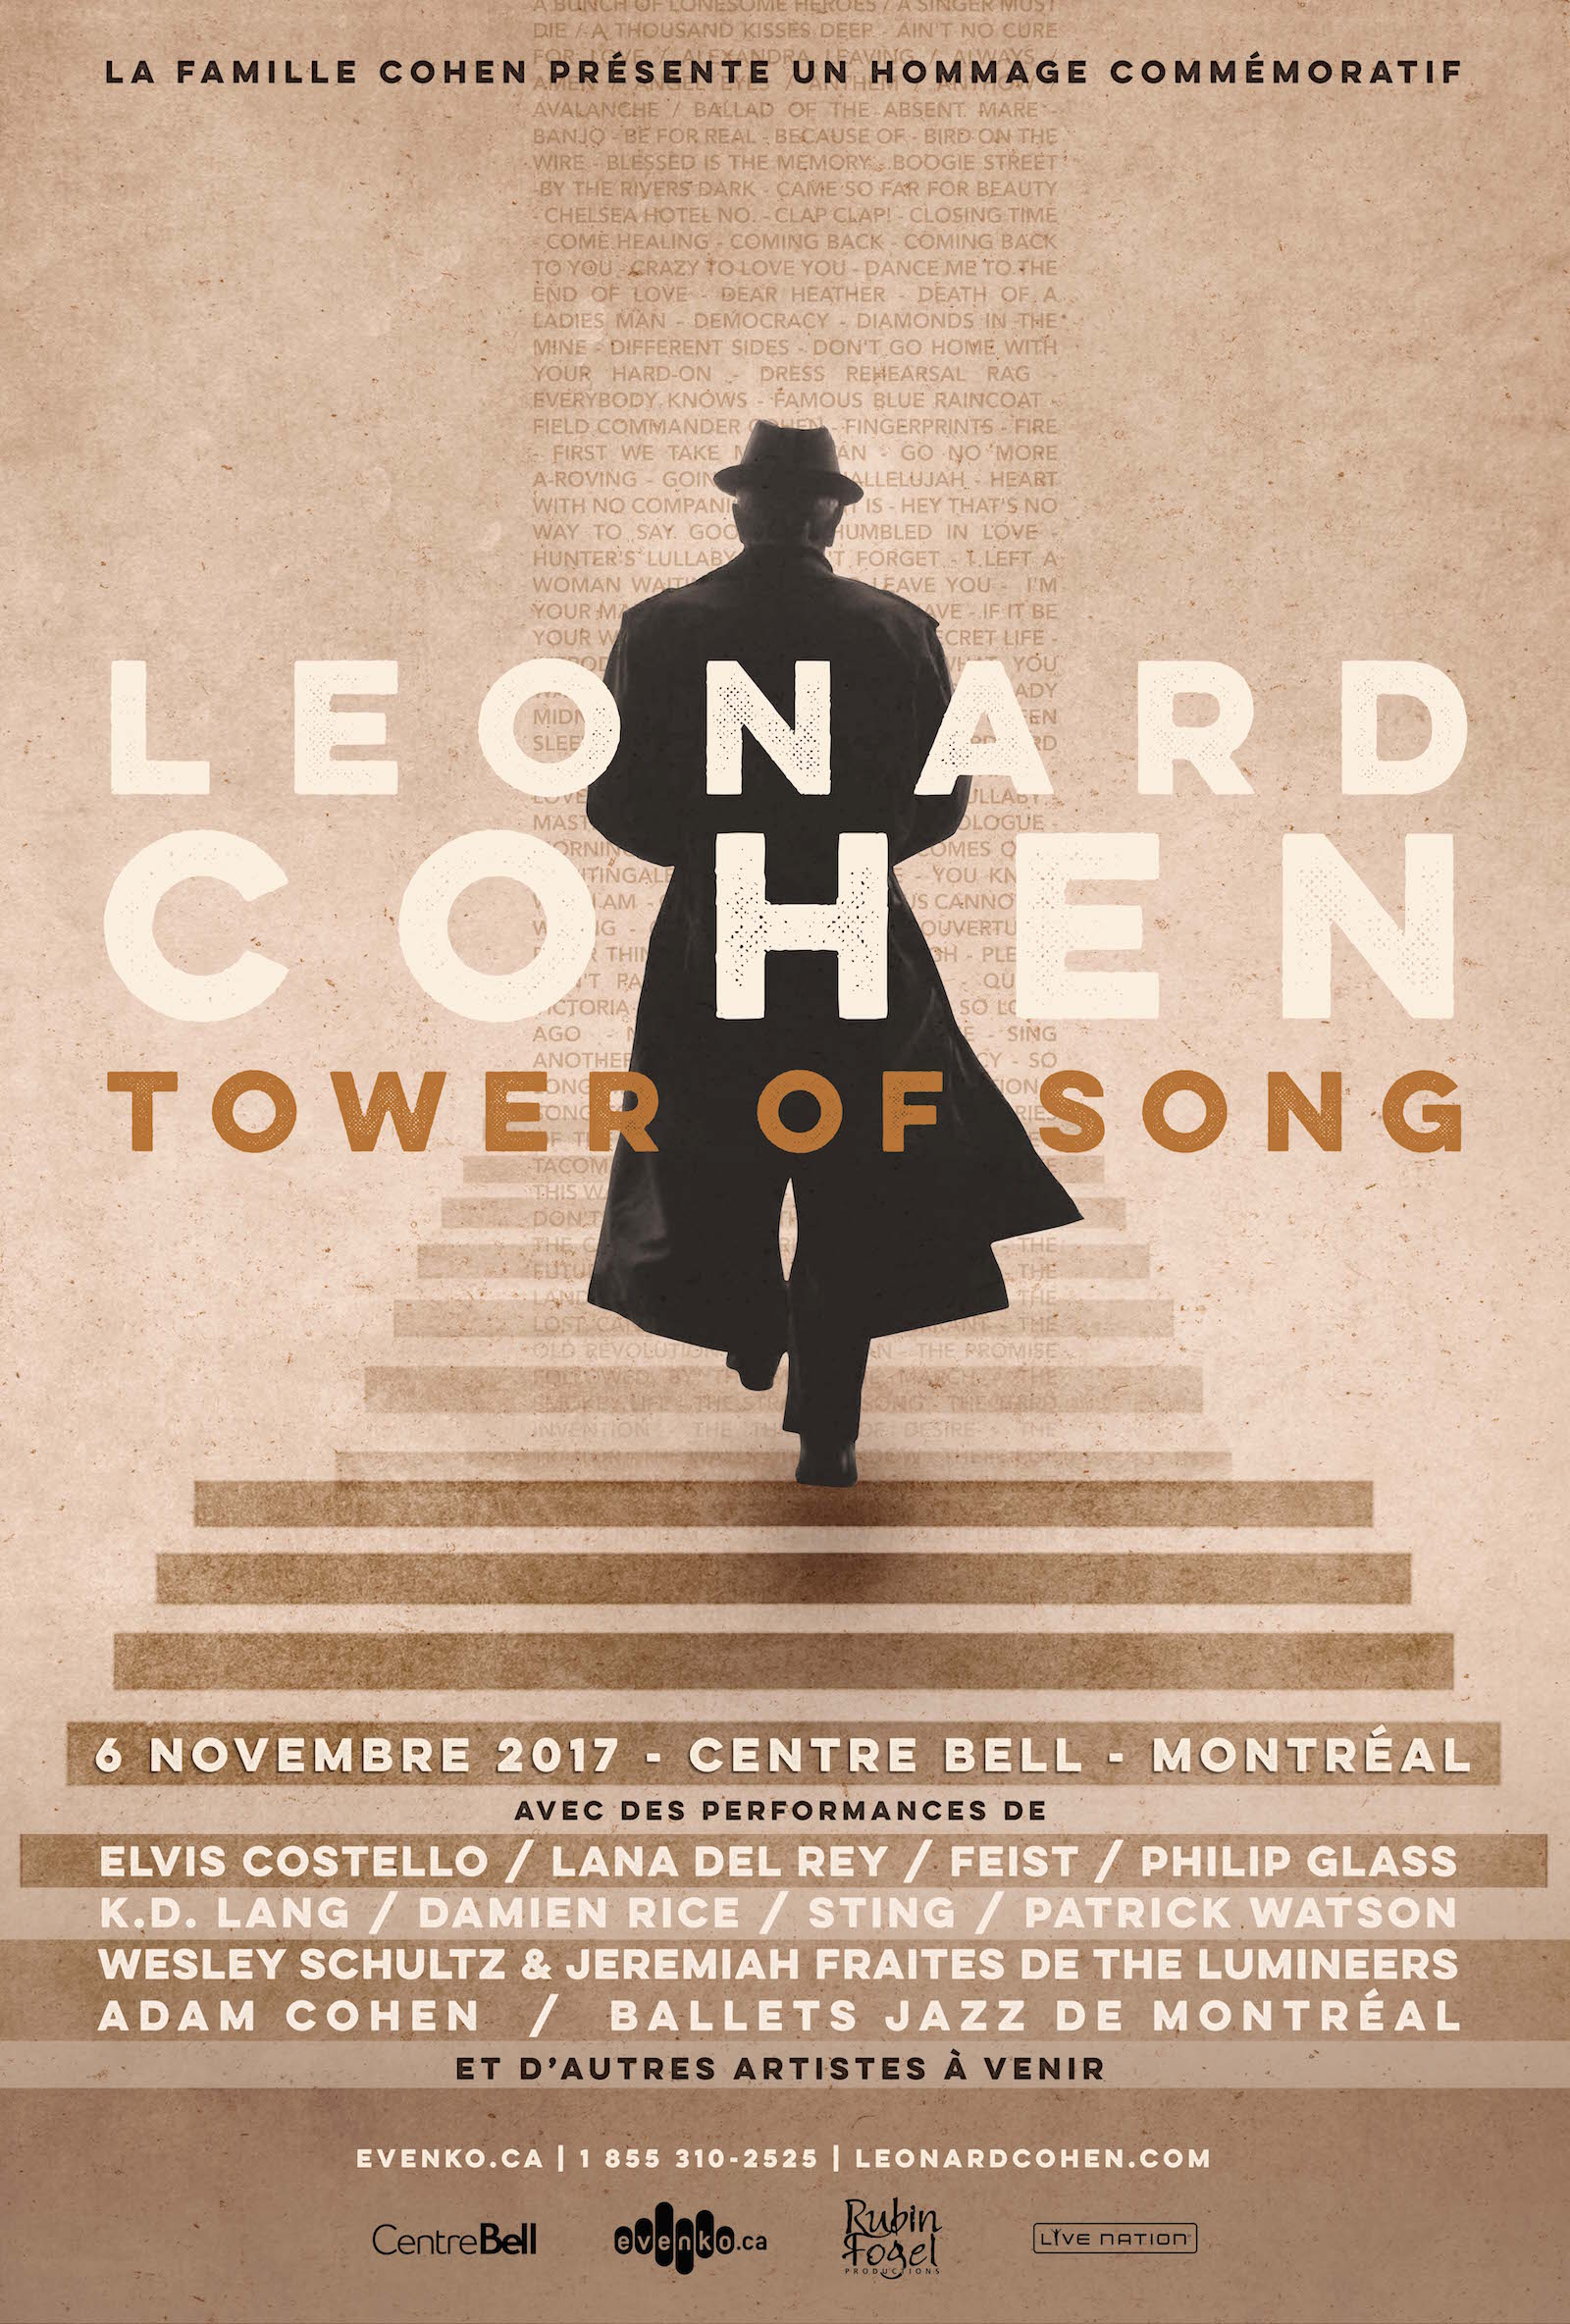 Annonce d'un concert hommage à Leonard Cohen Musée d'art contemporain